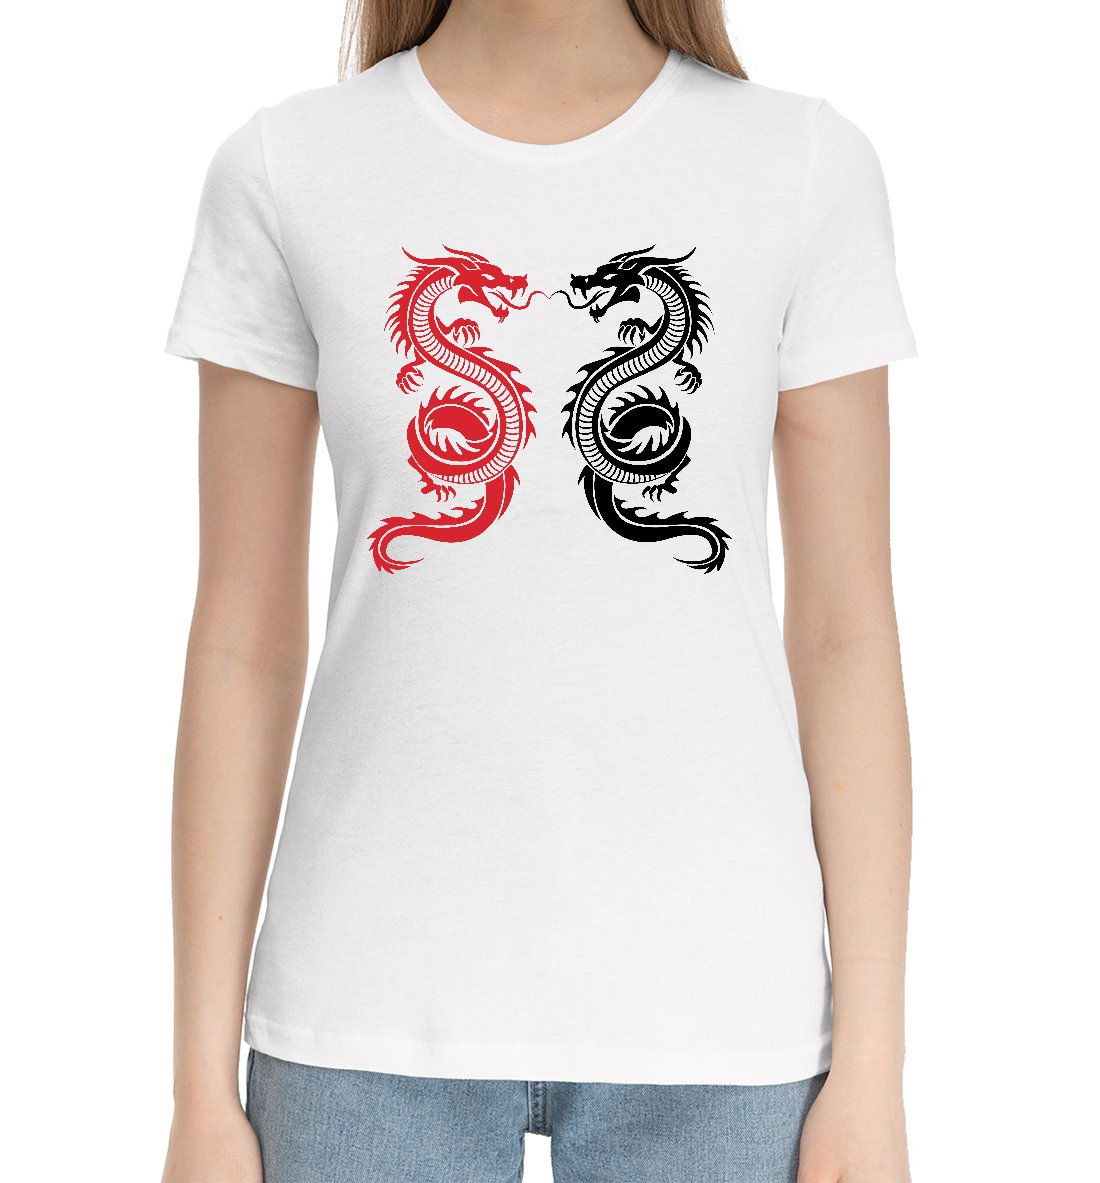 Близнецы год дракона женщина. Женская футболка дракон. Женская майка дракон. Рубашка с драконом женская. Футболка женская с драконом дизайнерская.